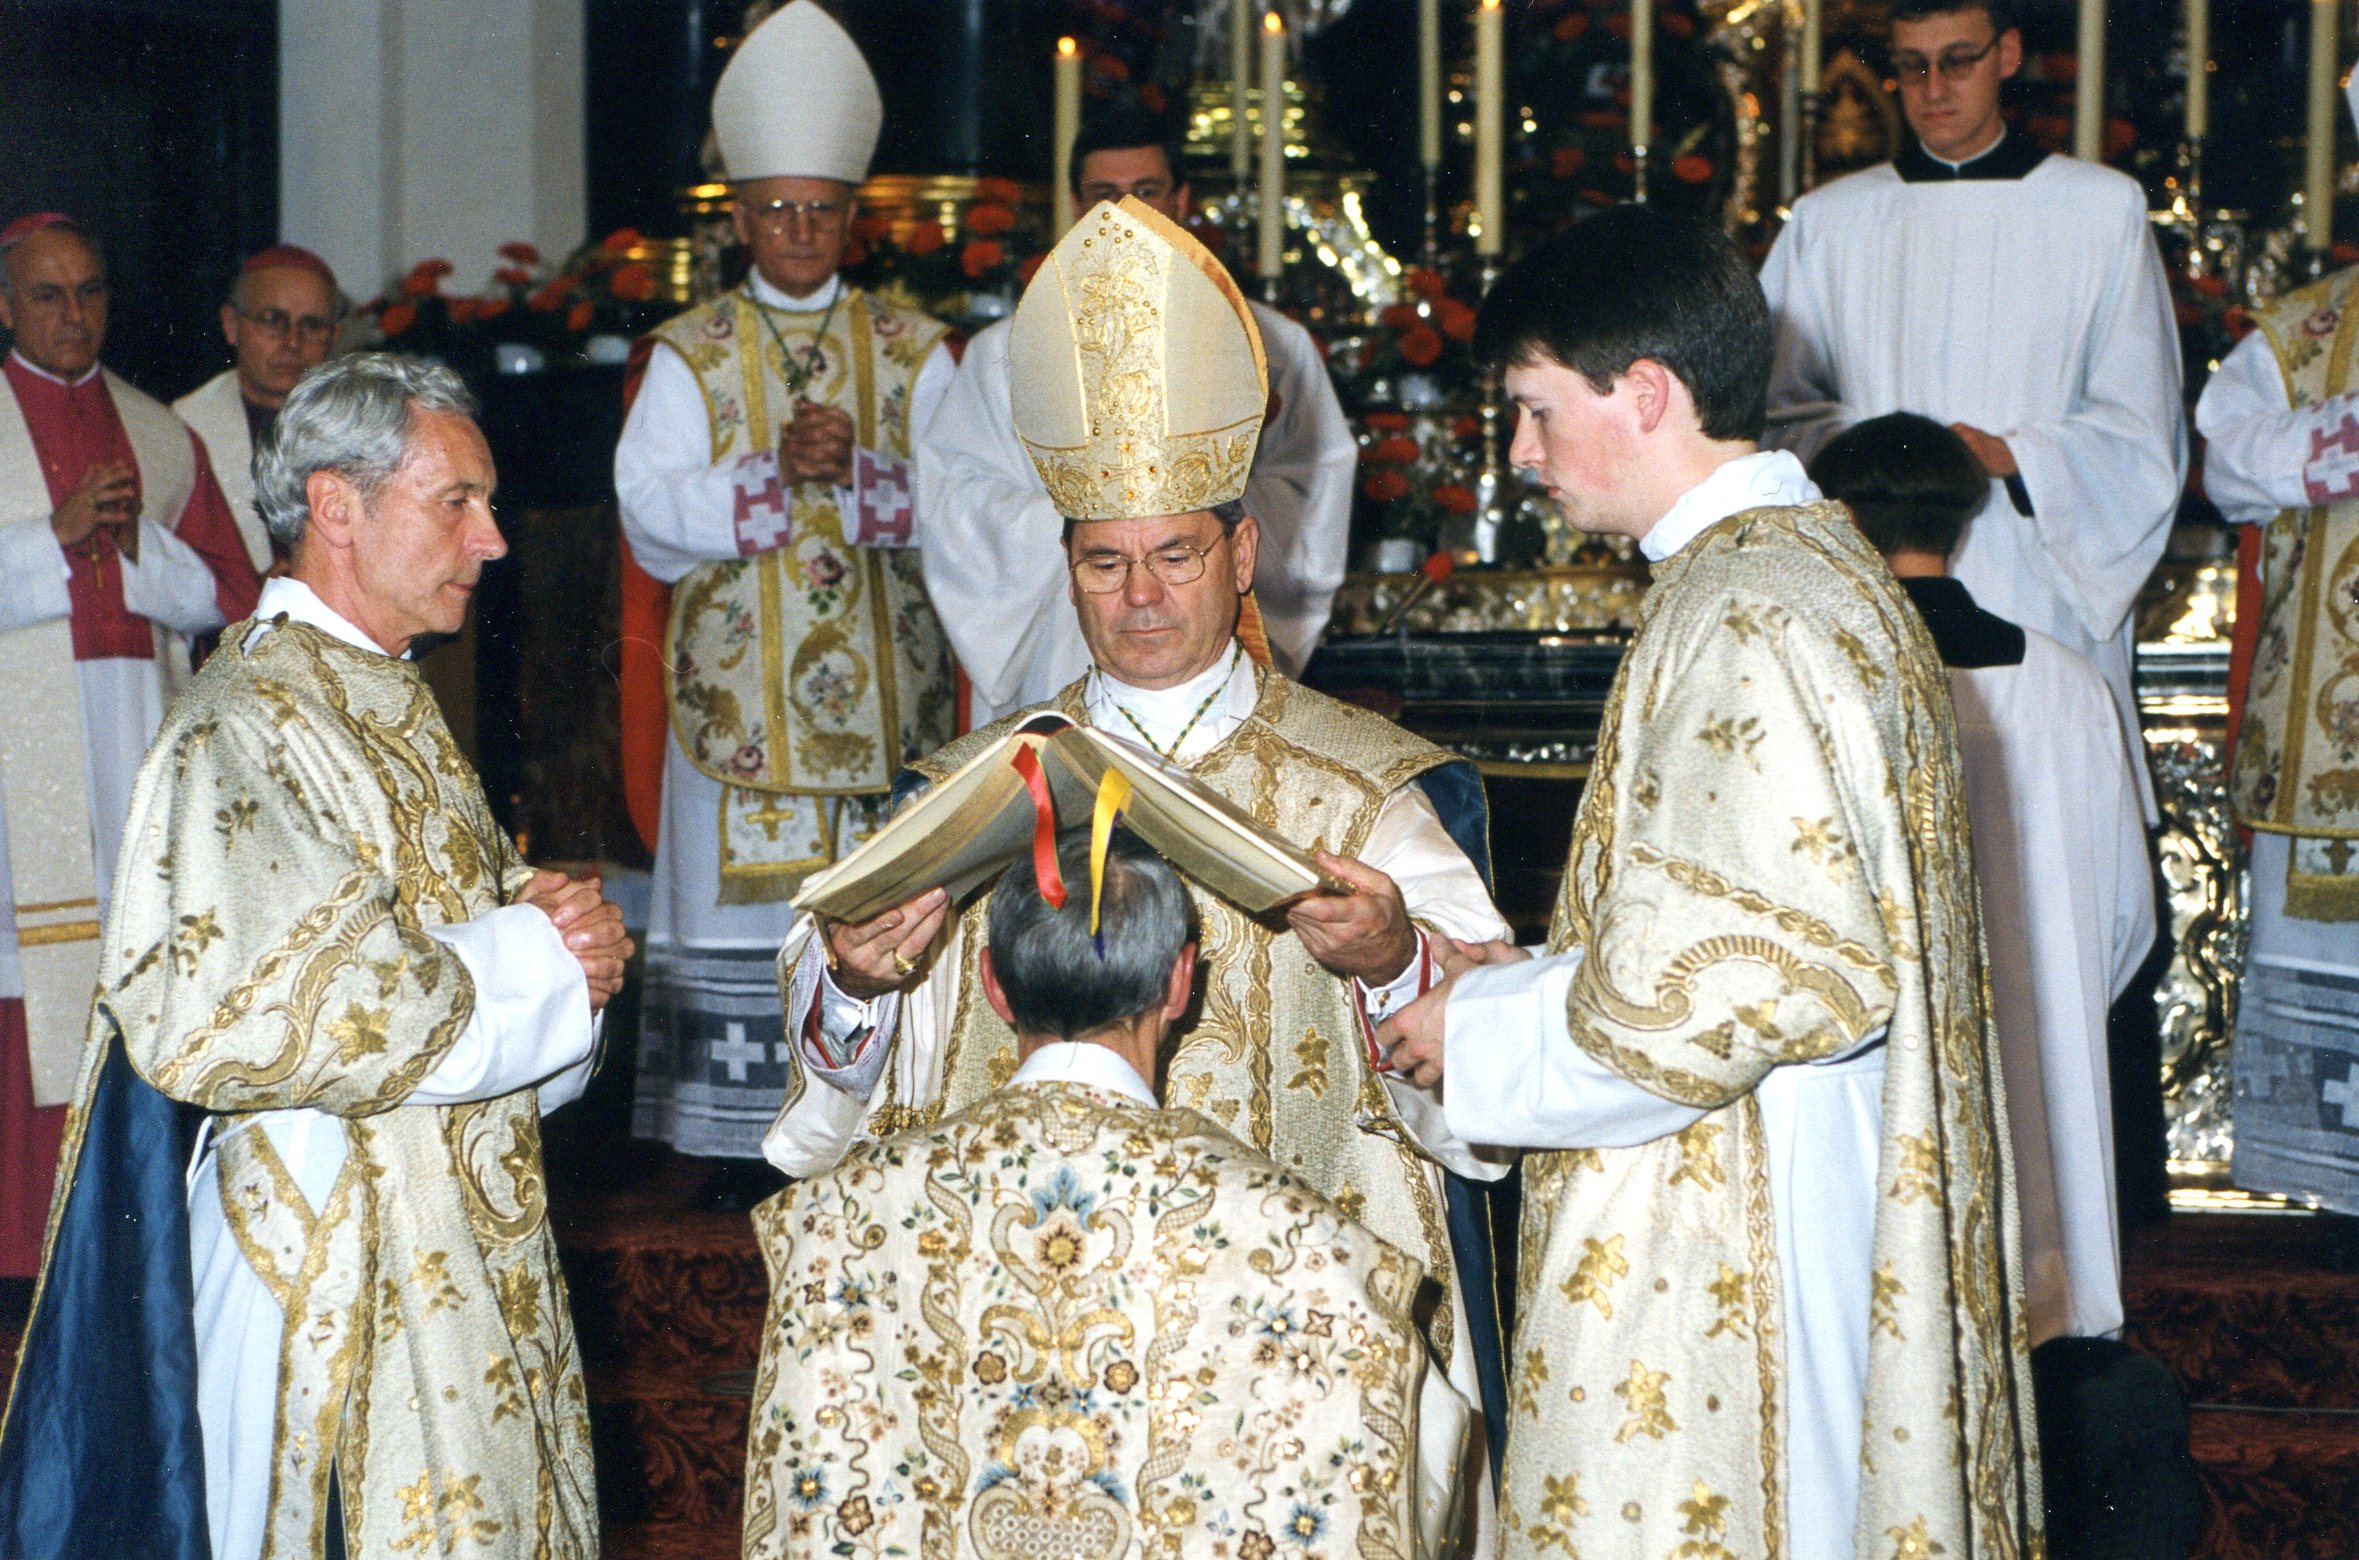 Bischofsweihe durch Erzbischof Johannes Dyba, 1998